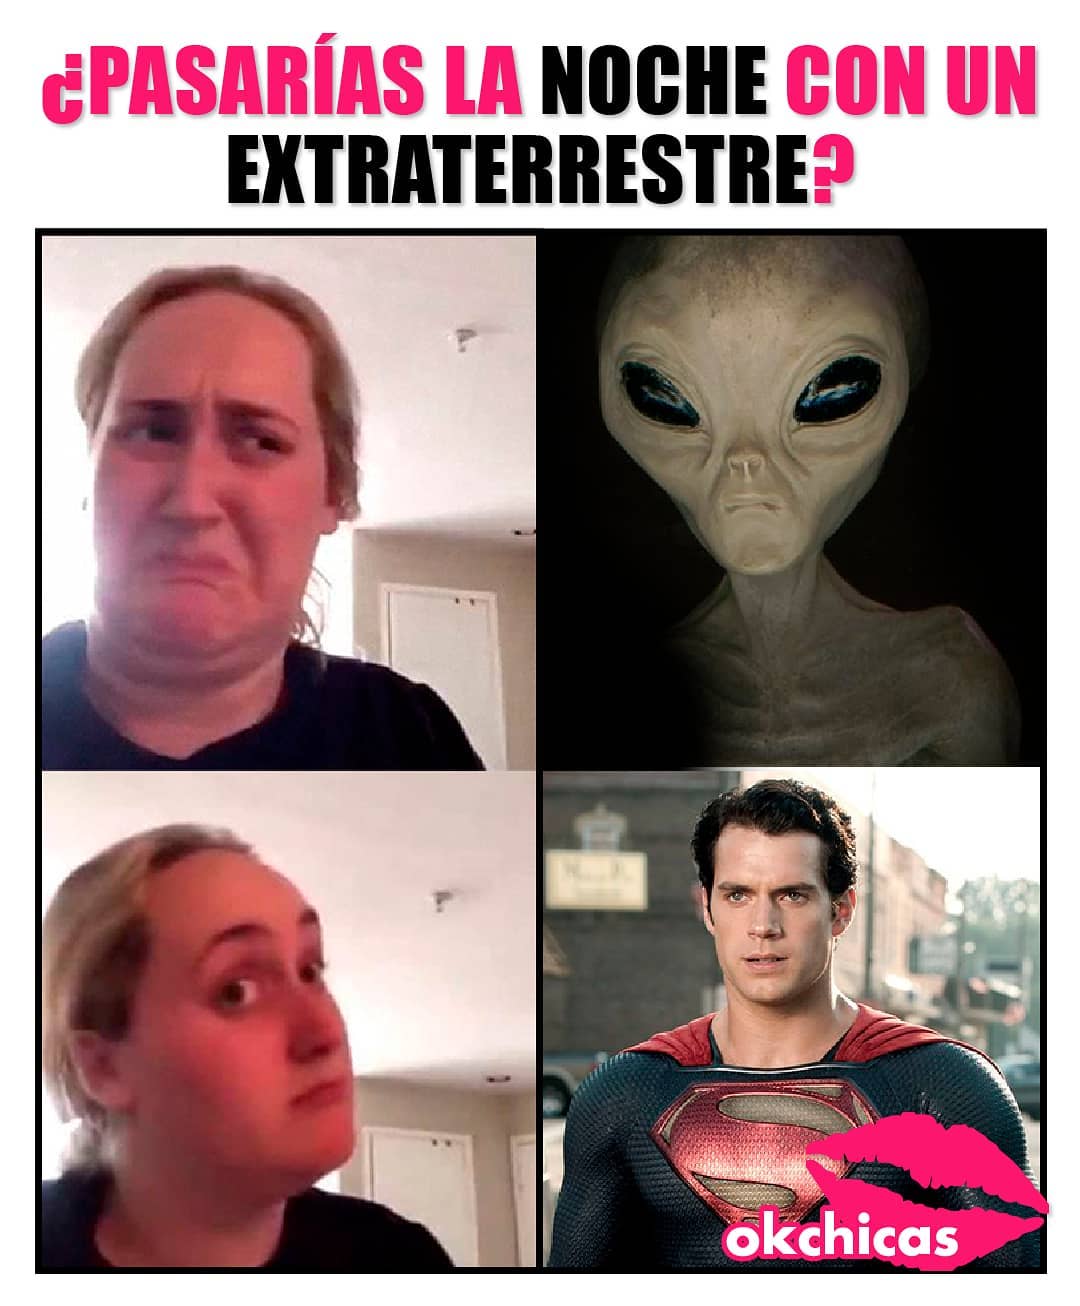 ¿Pasarías la noche con un extraterrestre?